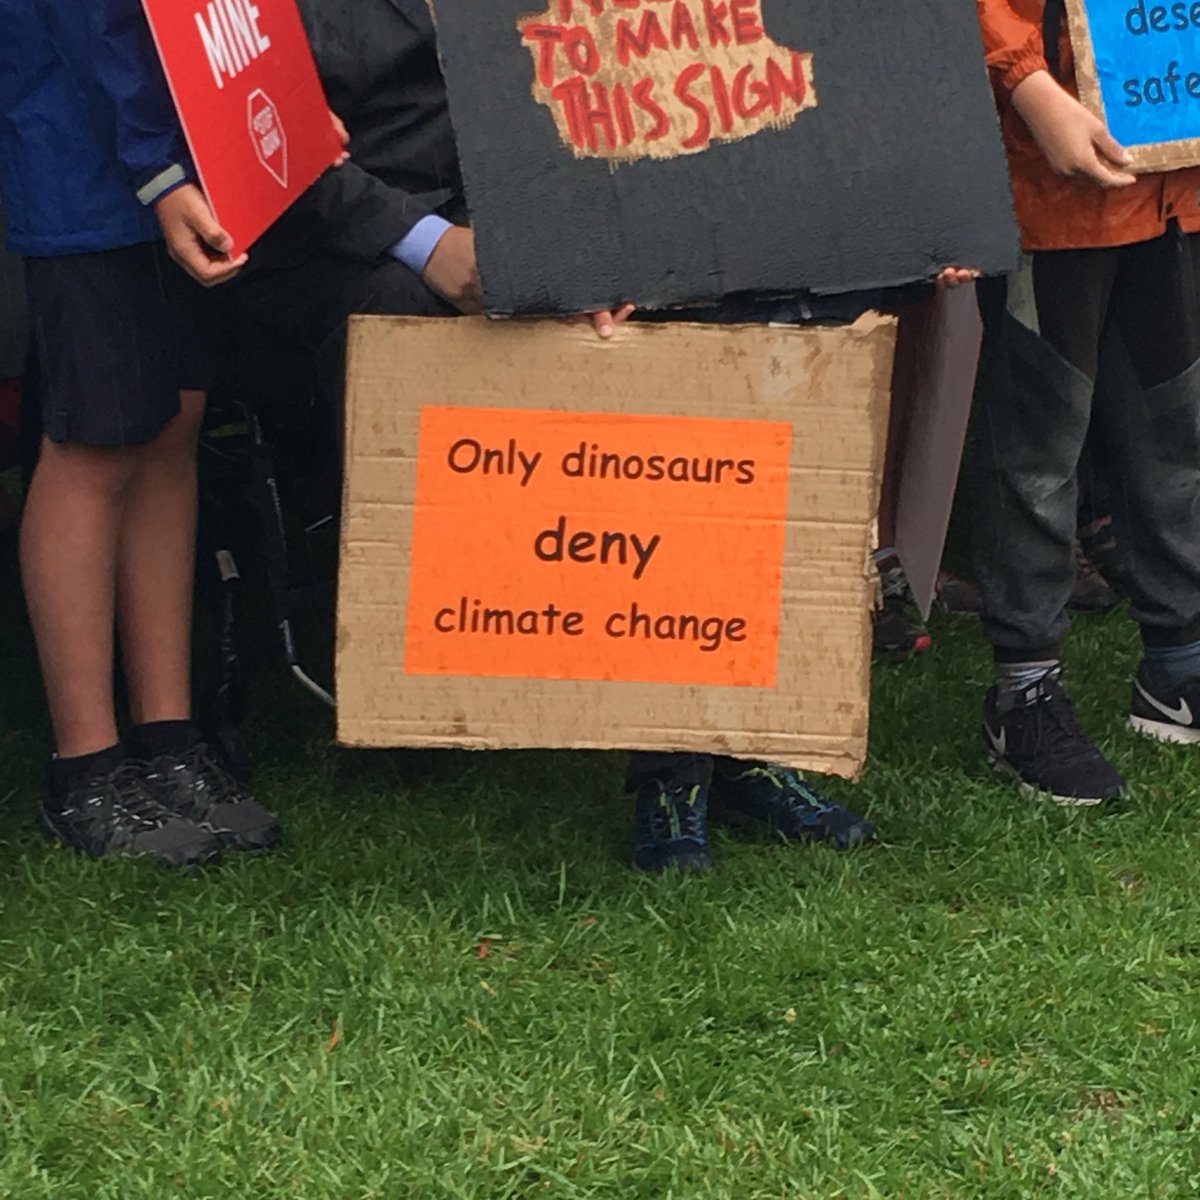 لافتة تقول الديناصورات فقط تنكر التغير المناخى